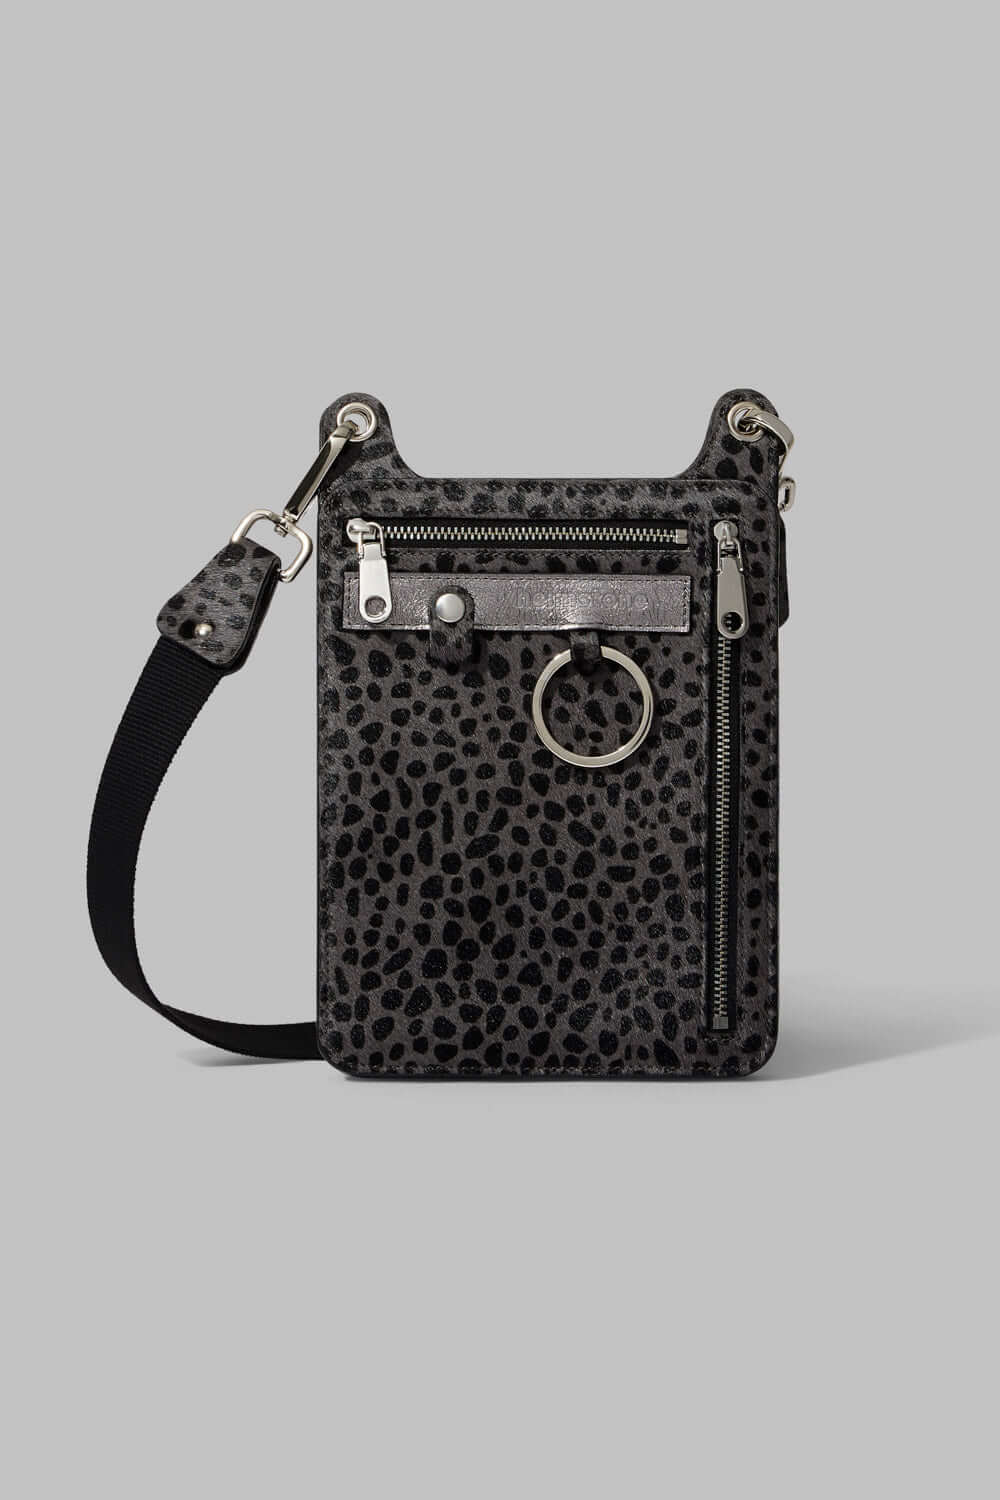 Stanley satchel in grey Cheetah printed leather